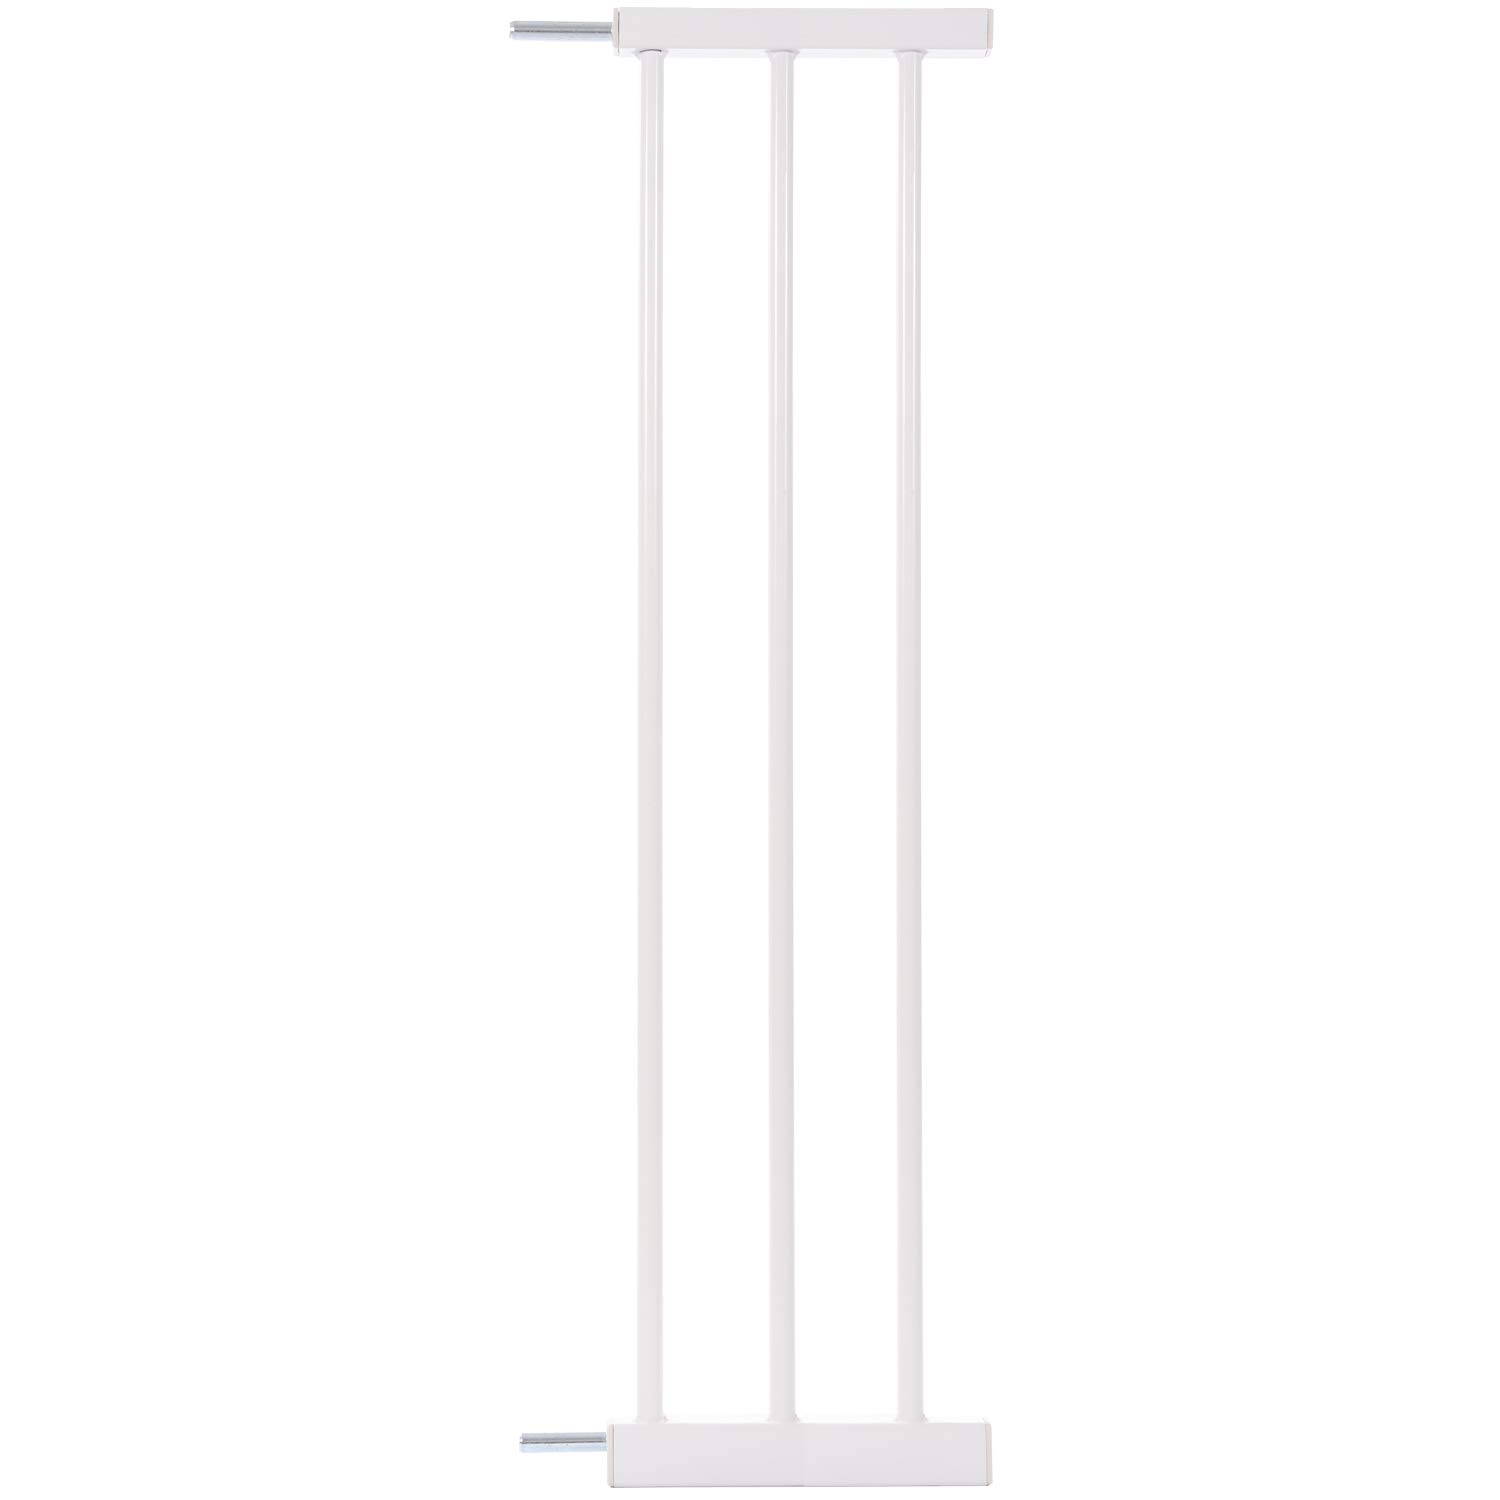 KIDIMAX Treppenschutzgitter (Modell 2022) Erweiterung (Verlängerung) 20 cm, steckbarer Gitter Aufsatz für Treppenschutz, weiß